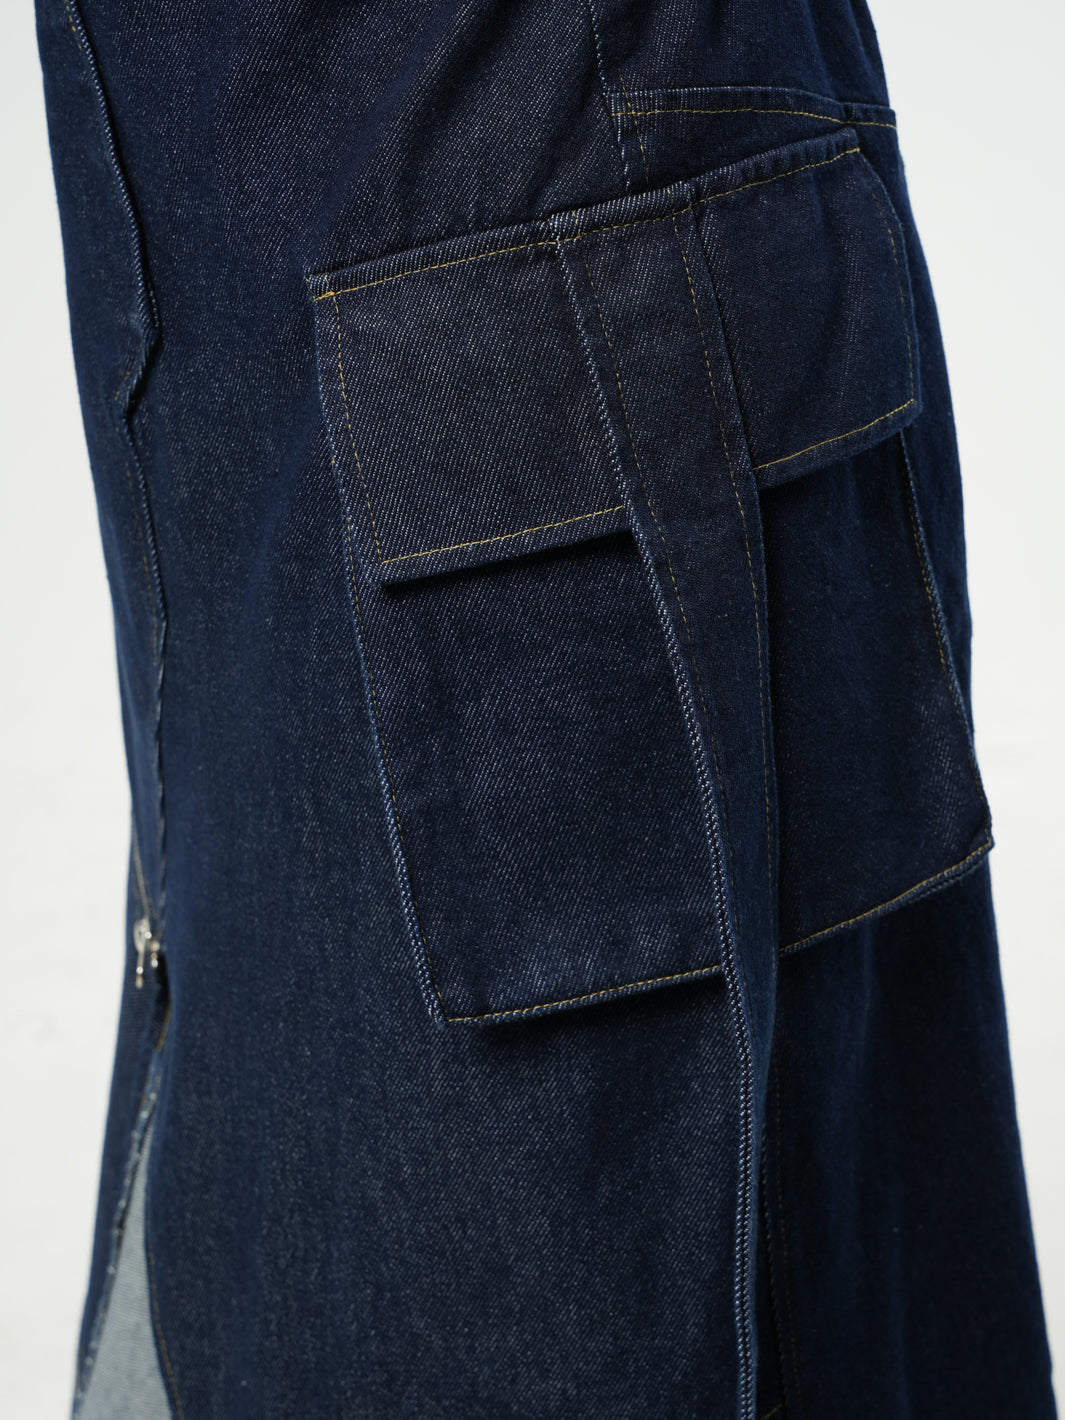 Asymmetric Denim Long Skirt with Zippers